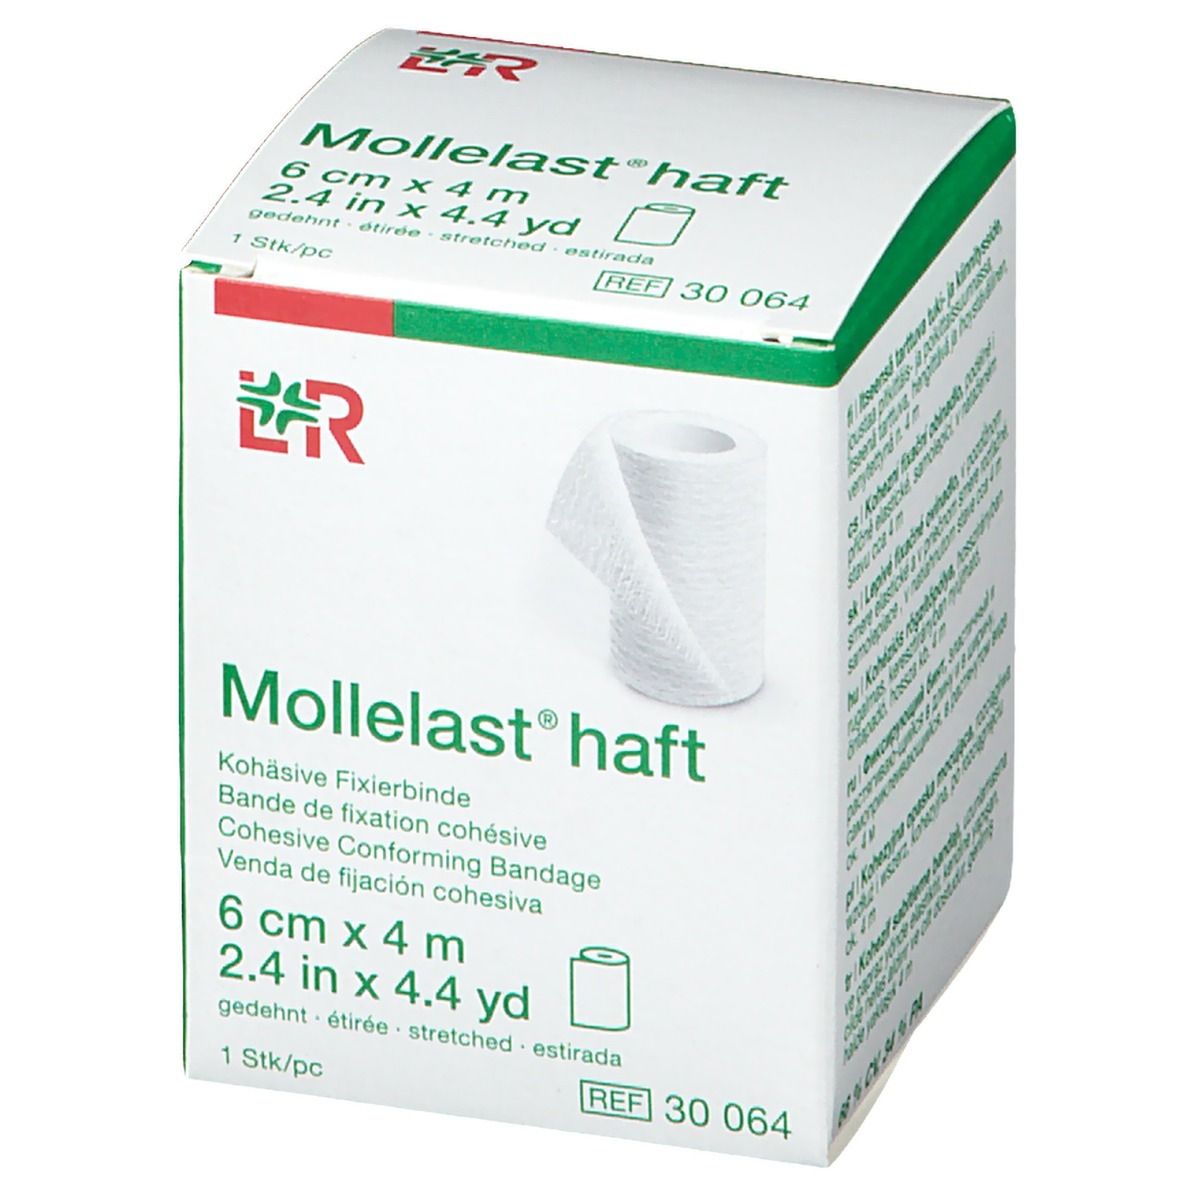 Lohmann & Rauscher Mollelast® Haft 6 cm x 4 m